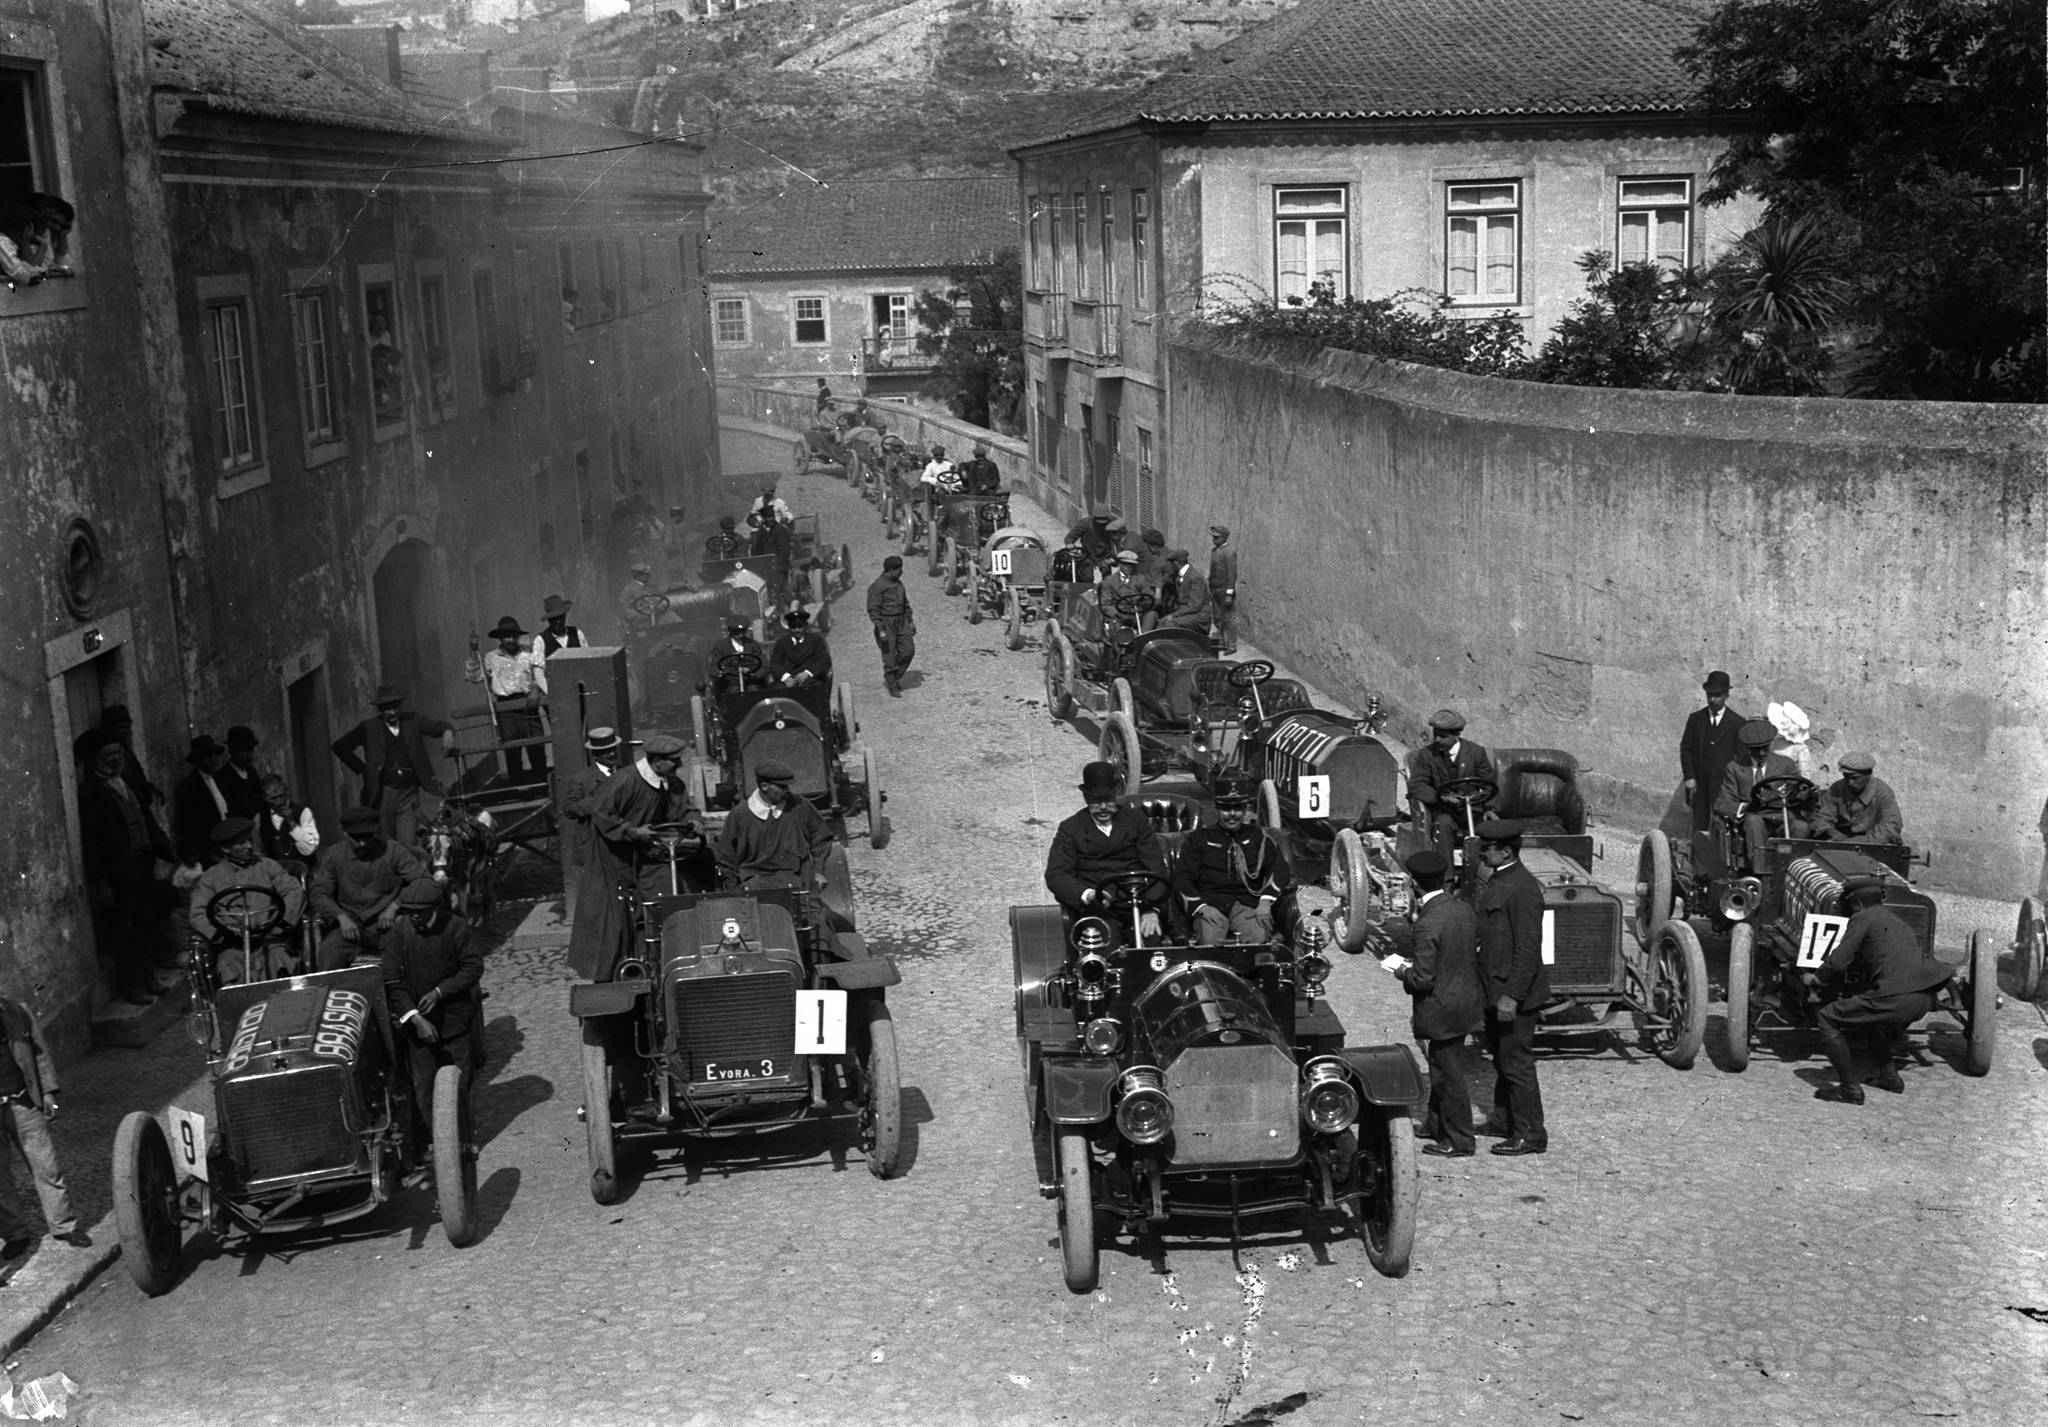 Corrida de automóveis e motocicletas em rampa, da Ponte Nova à Cruz das Oliveiras (1910-07-10) - Car race, from Ponte Nova to Cruz das Oliveiras, in 1910. Prince Royal Afonso, Duke of Porto (in a bowler hat), is driving the center of the car, with his aide-de-camp.